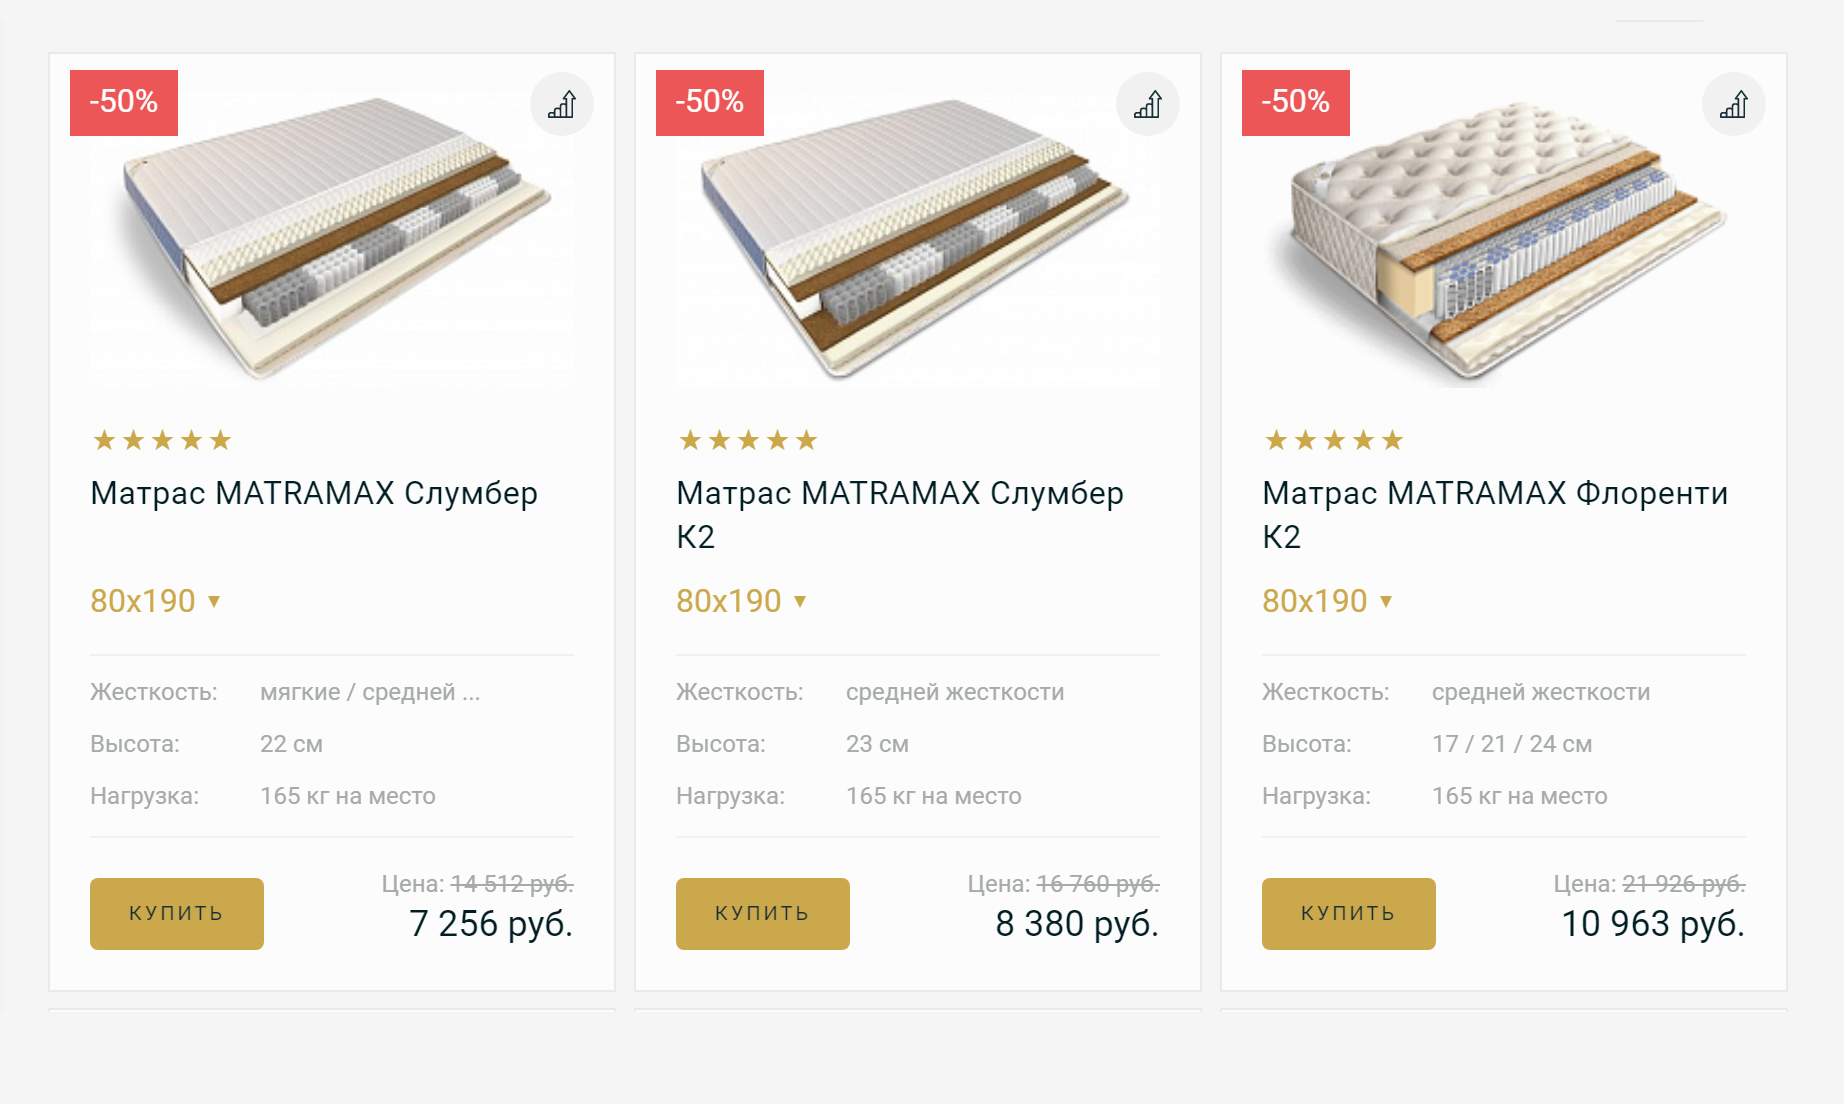 Матрасы в интернет-магазине «Матрамакс»: цены от 7256 ₽ и выше для односпальной кровати